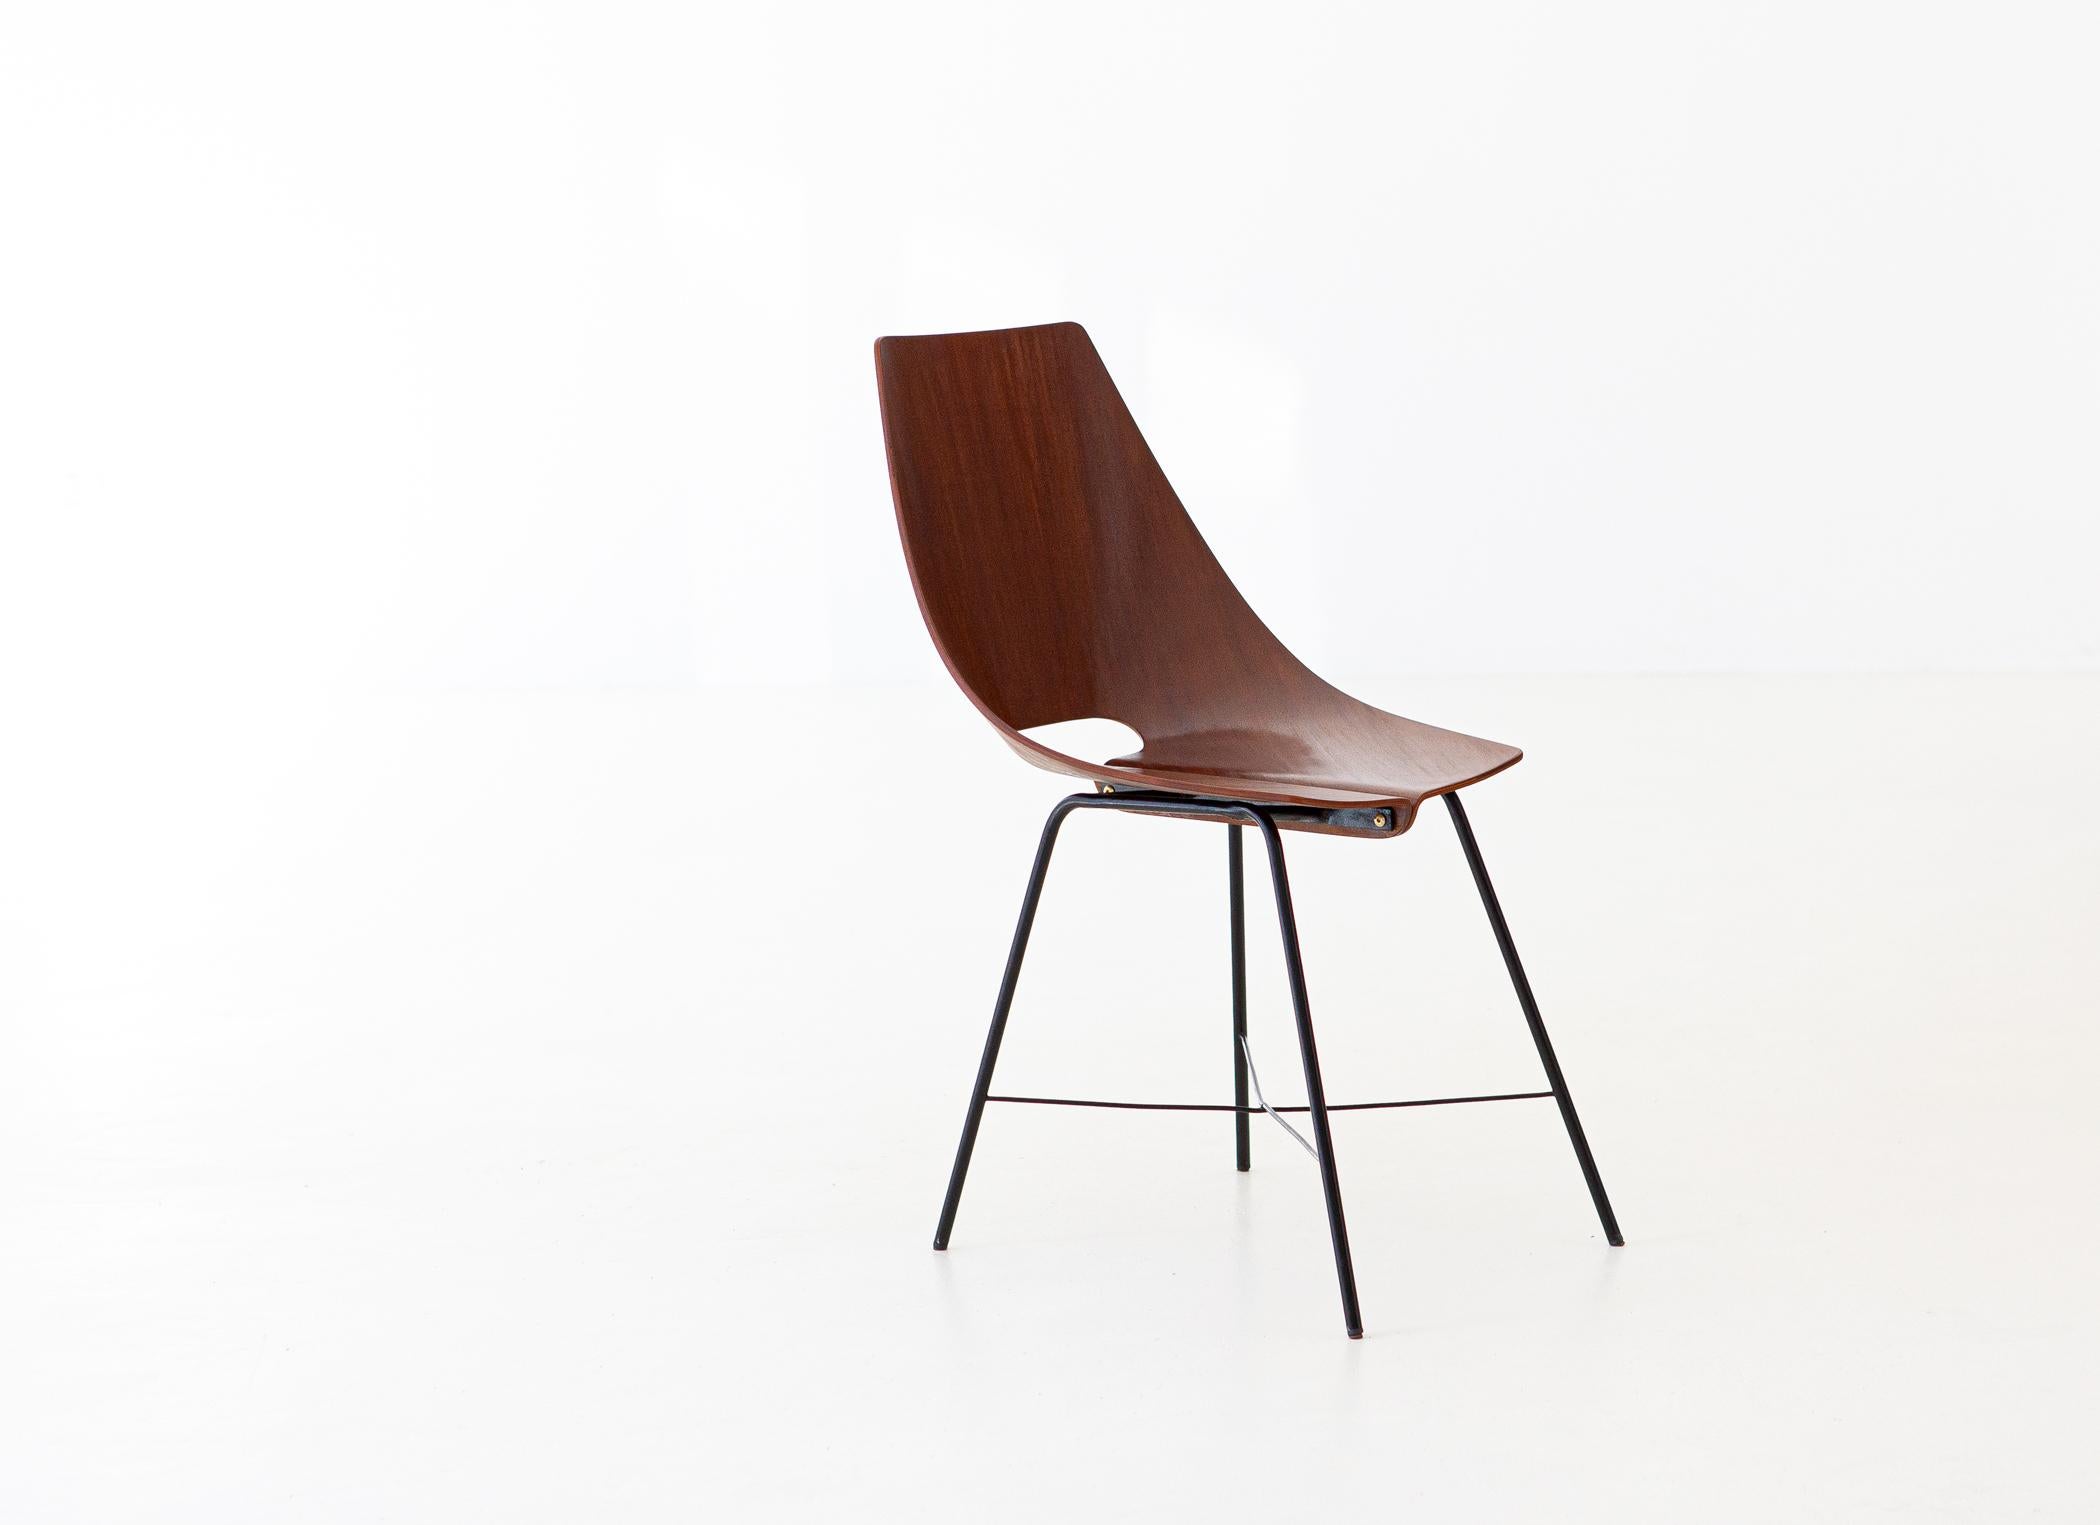 Iron Italian Plywood Chair by Società Compensati Curvati, 1950s